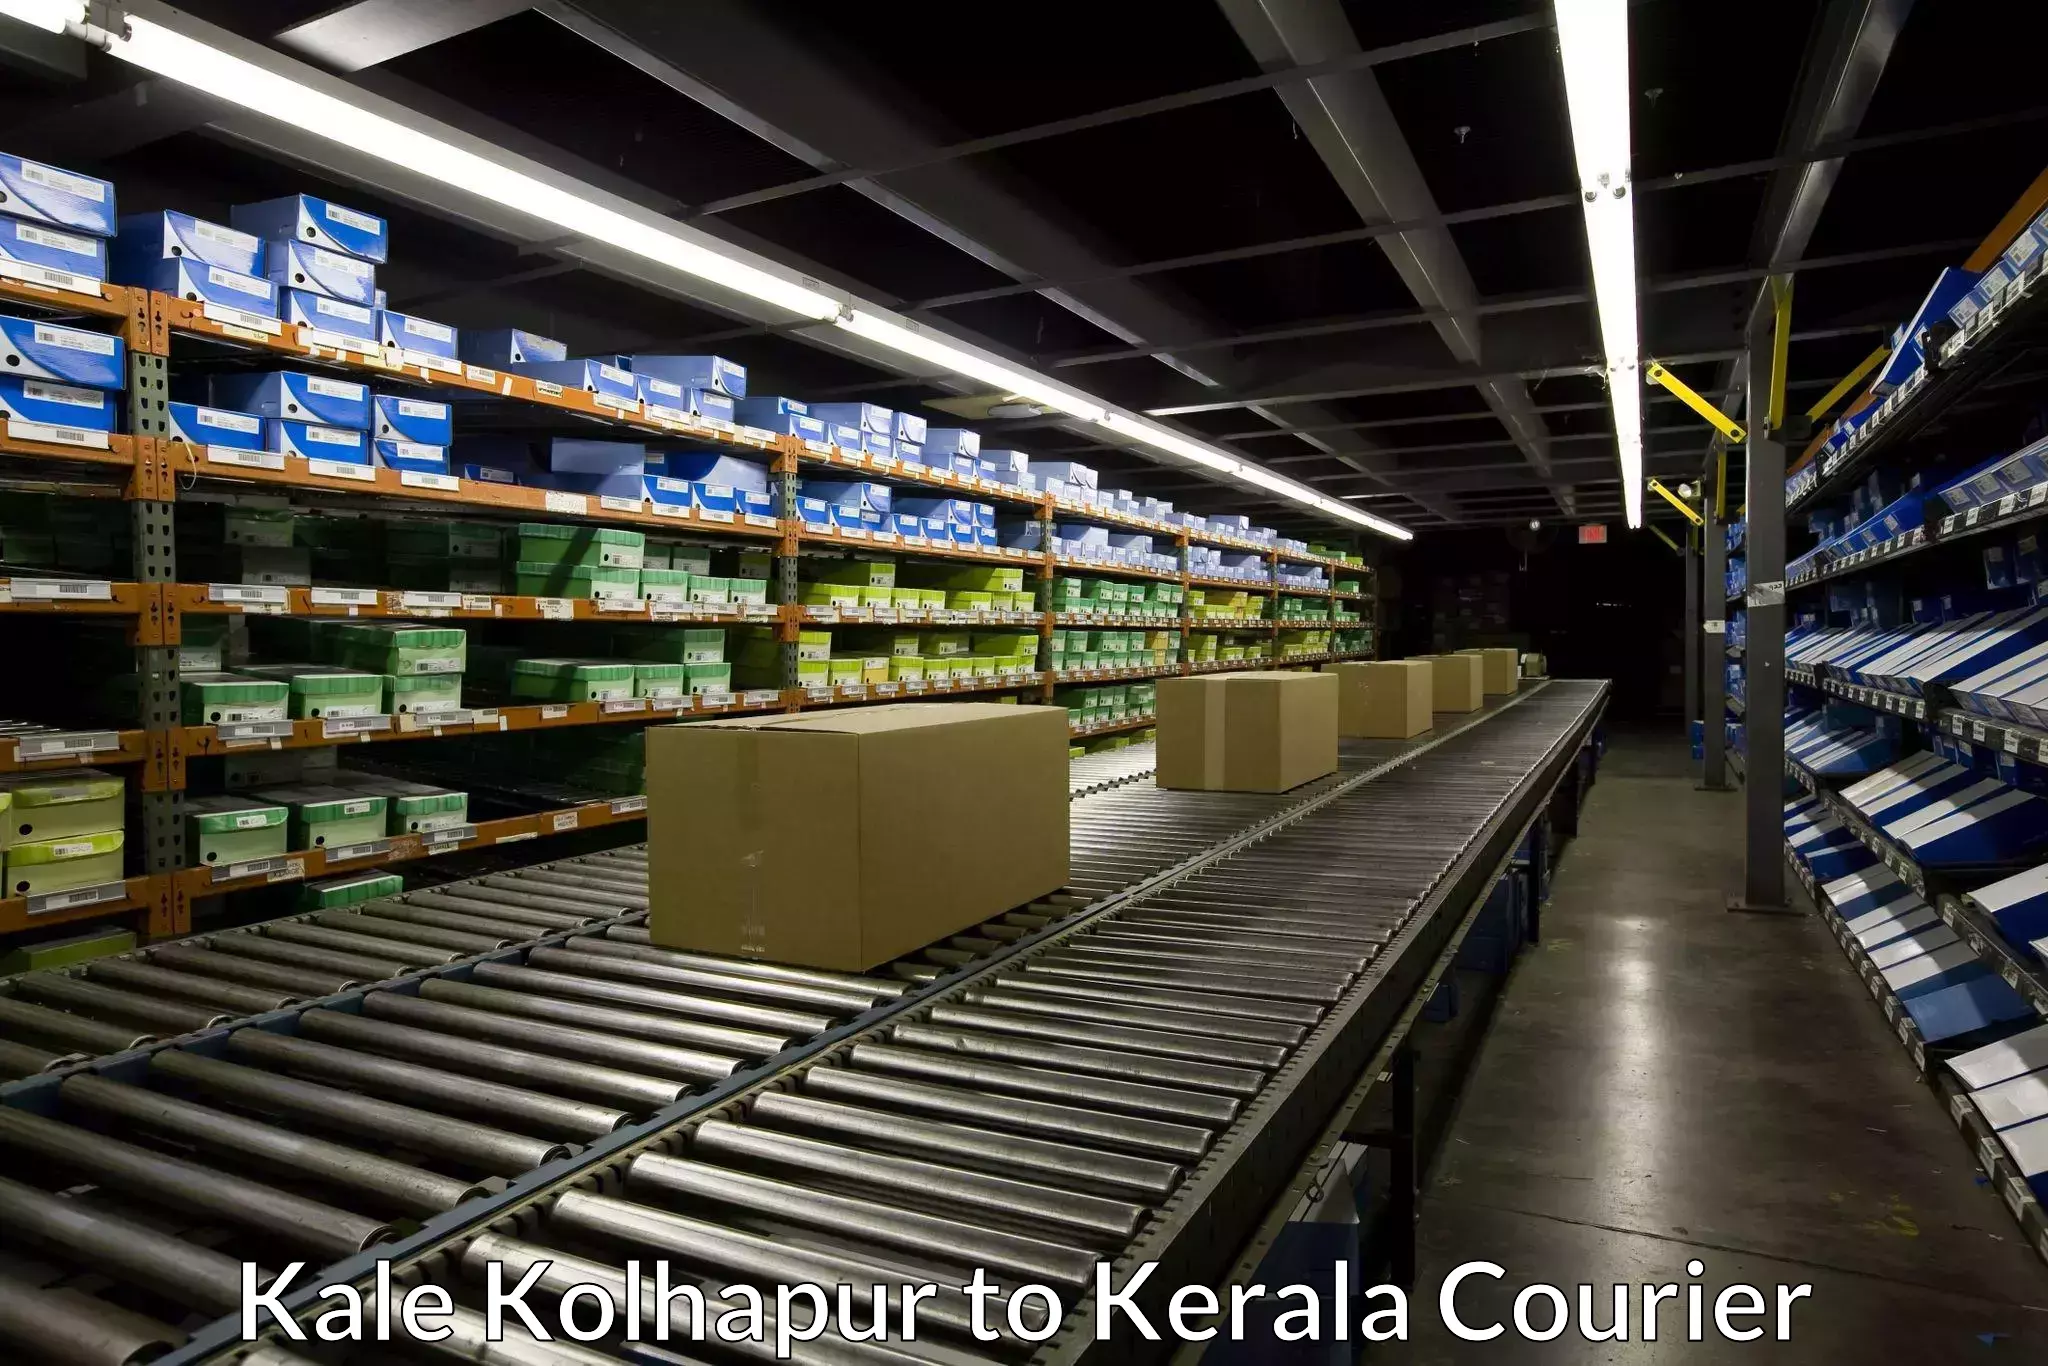 Express courier facilities Kale Kolhapur to Kerala